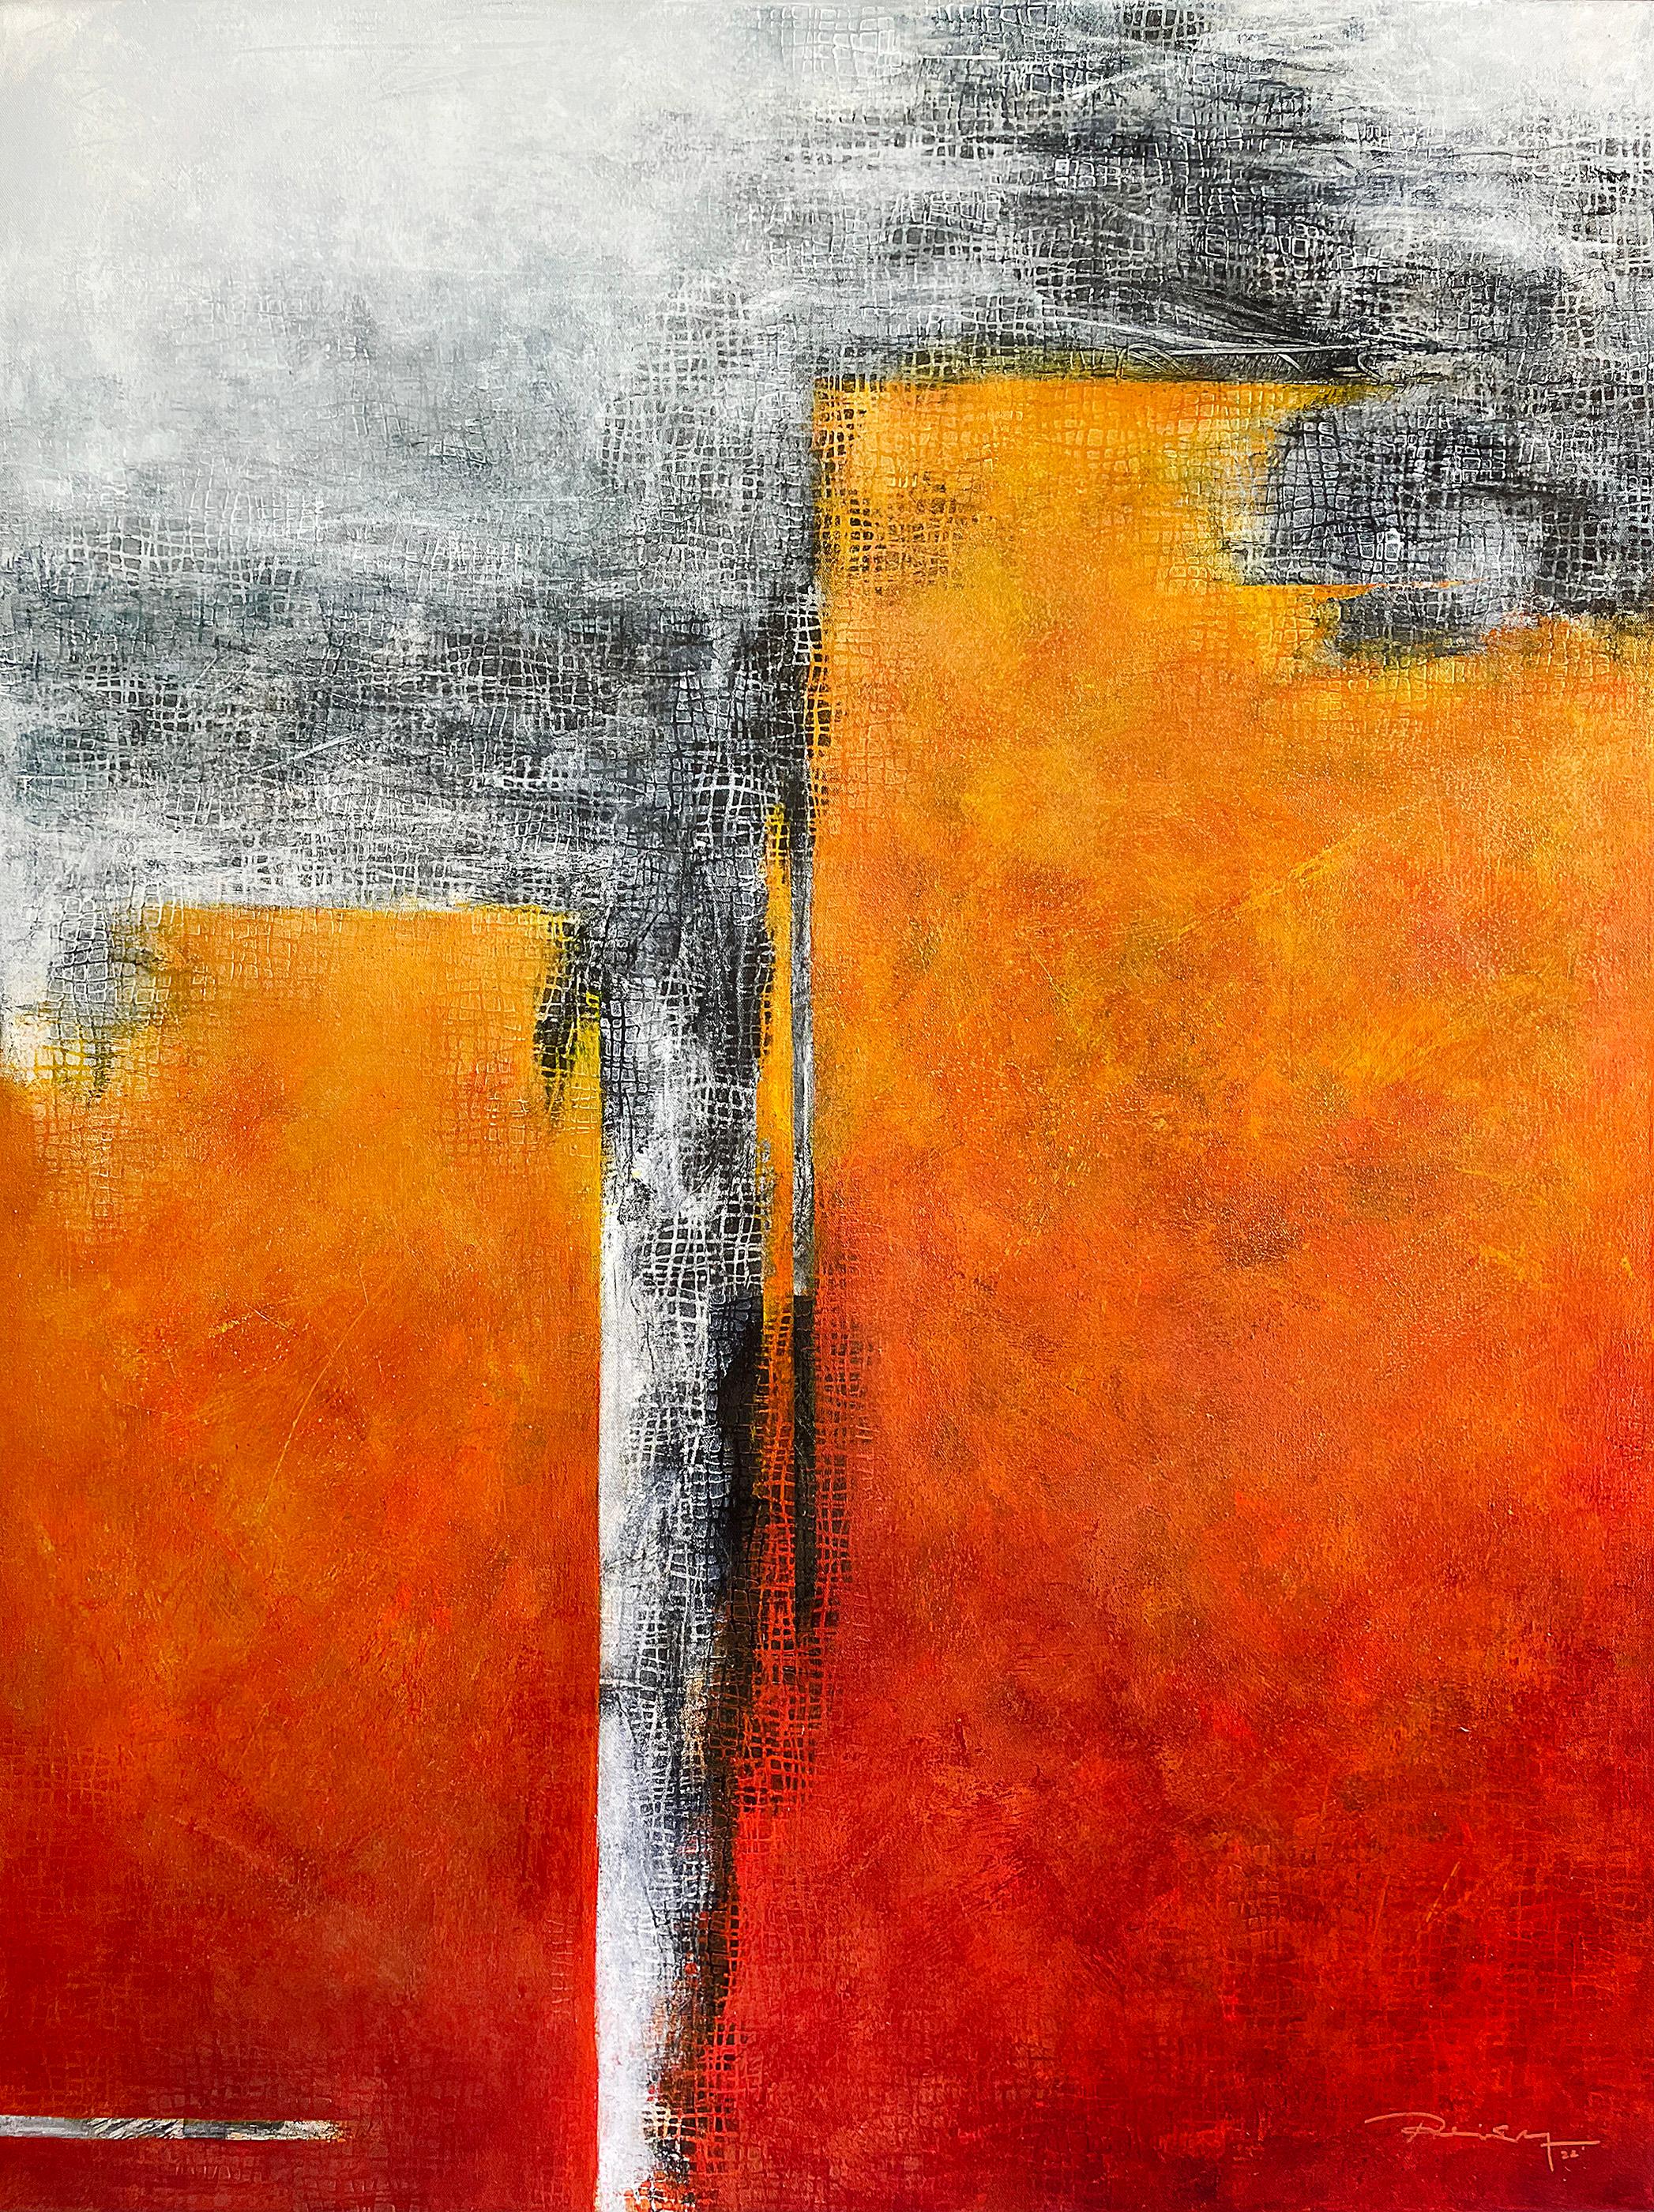 
"Risen" von Peisy Ting ist ein exquisites abstraktes, zeitgenössisches Gemälde, das ein starkes Gefühl von Energie und Dynamik hervorruft. Das Gemälde zeichnet sich durch eine leuchtend orangefarbene Farbpalette aus, die durch Grautöne kontrastiert